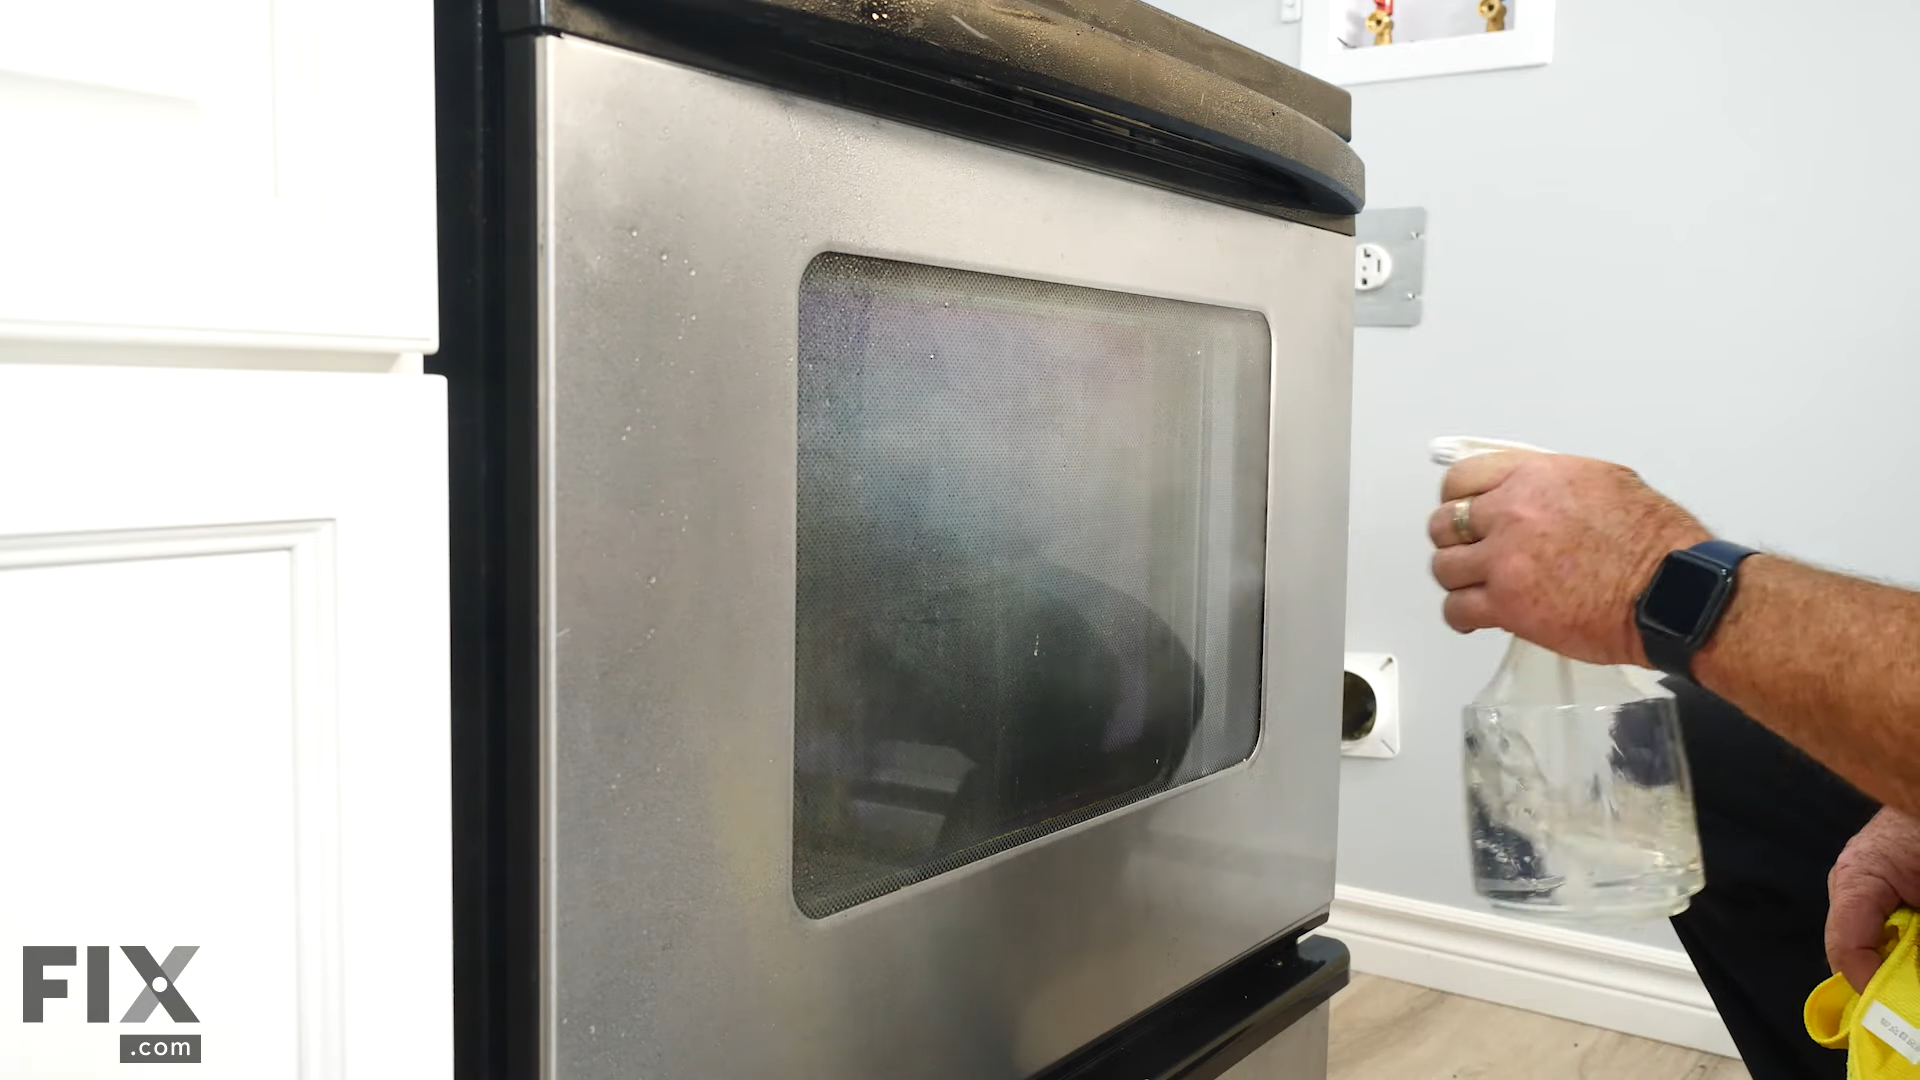 Spraying a Oven's Door with Vinegar